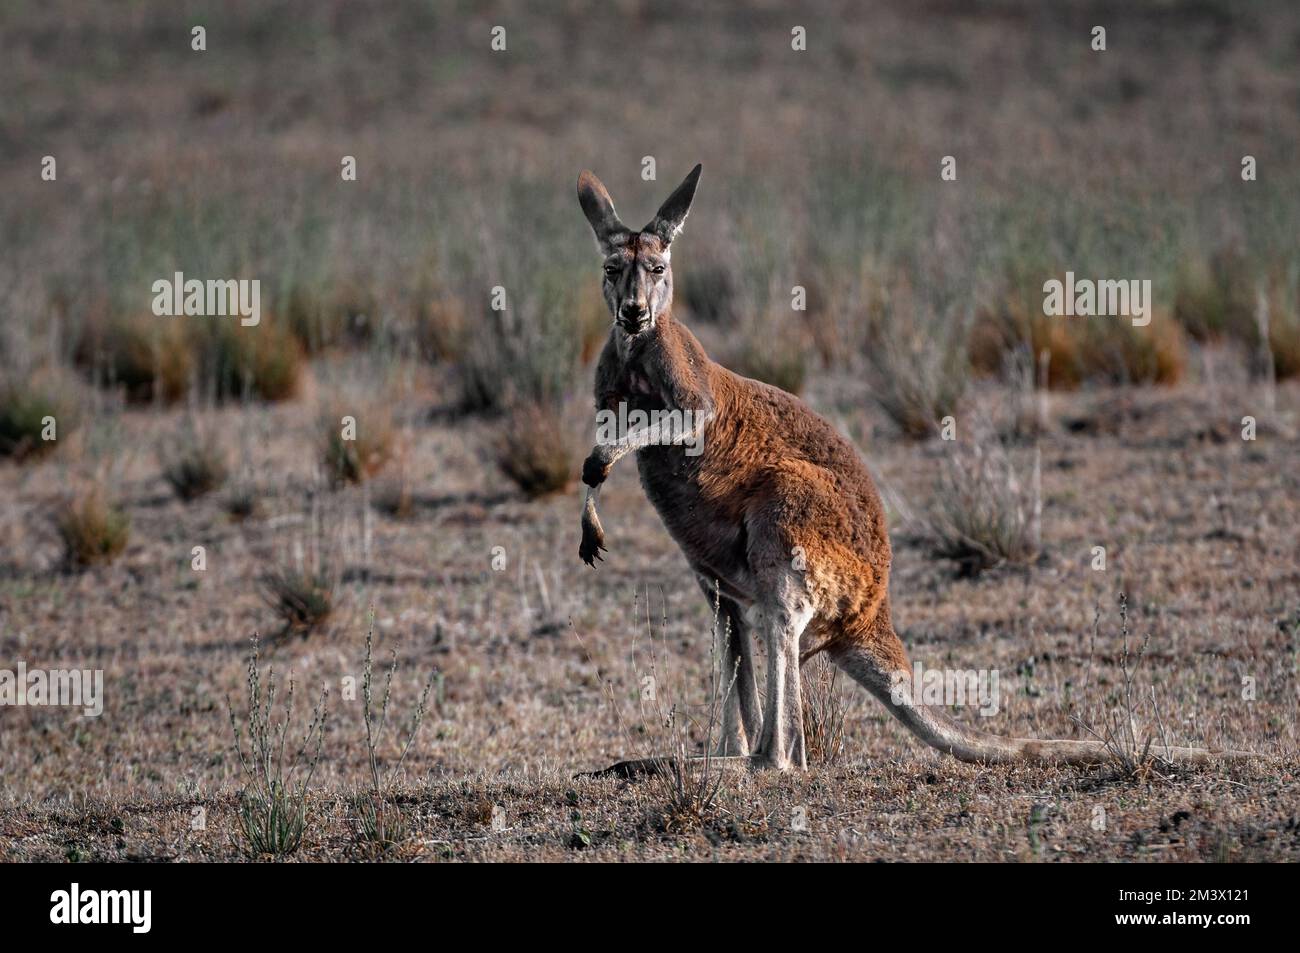 Red Kangaroo in Central Australia's desert. Stock Photo